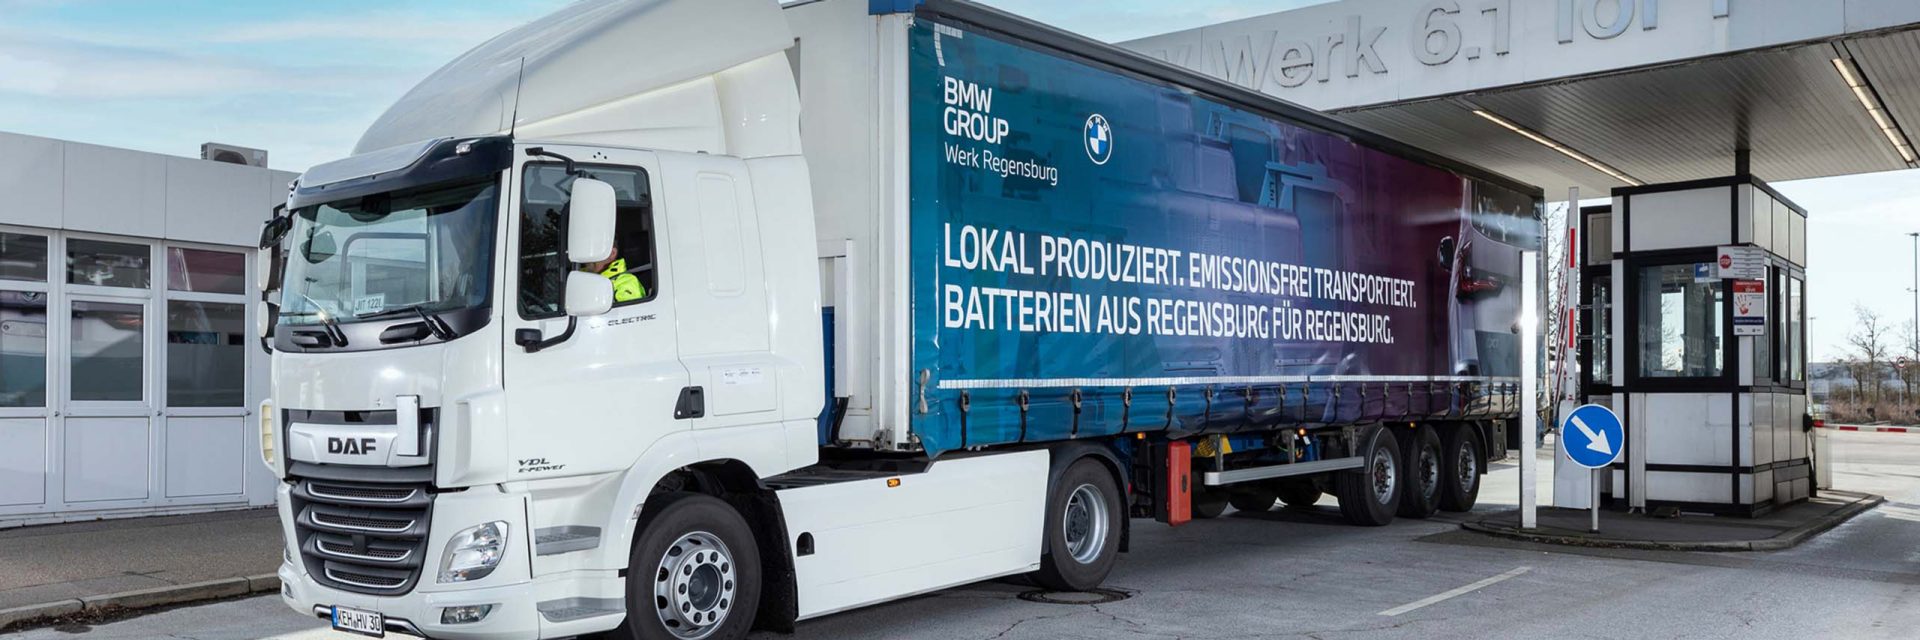 Über 90 Tonnen weniger CO2 pro Jahr: Erste E-LKW am BMW Group Standort Regensburg nehmen Fahrt auf